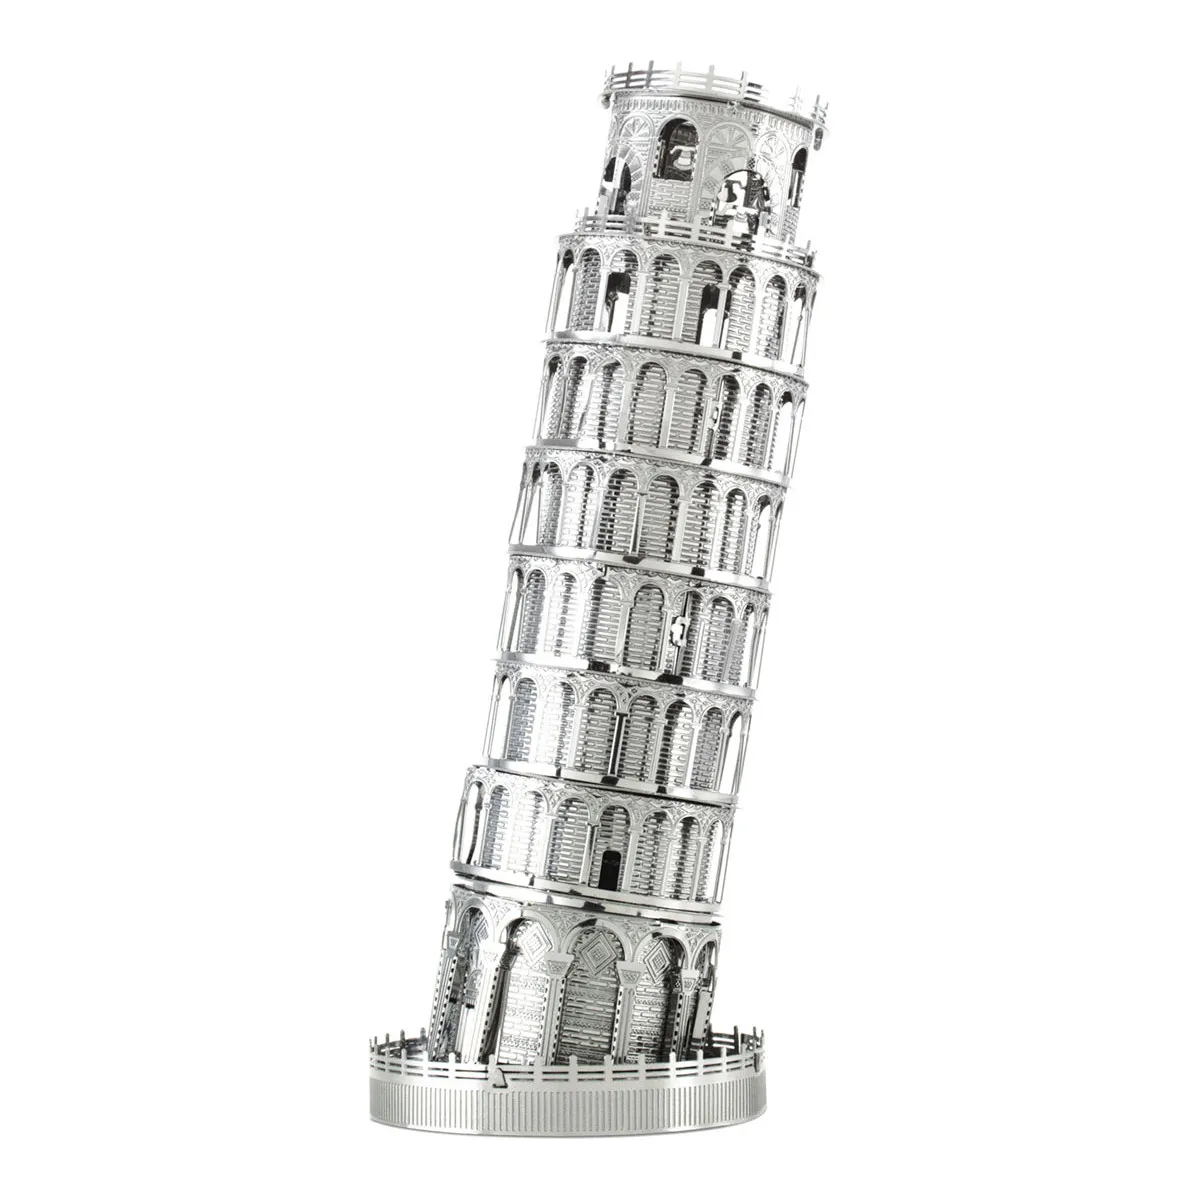 3D Metallbausatz berühmte Gebäude - Schiefer Turm von Pisa